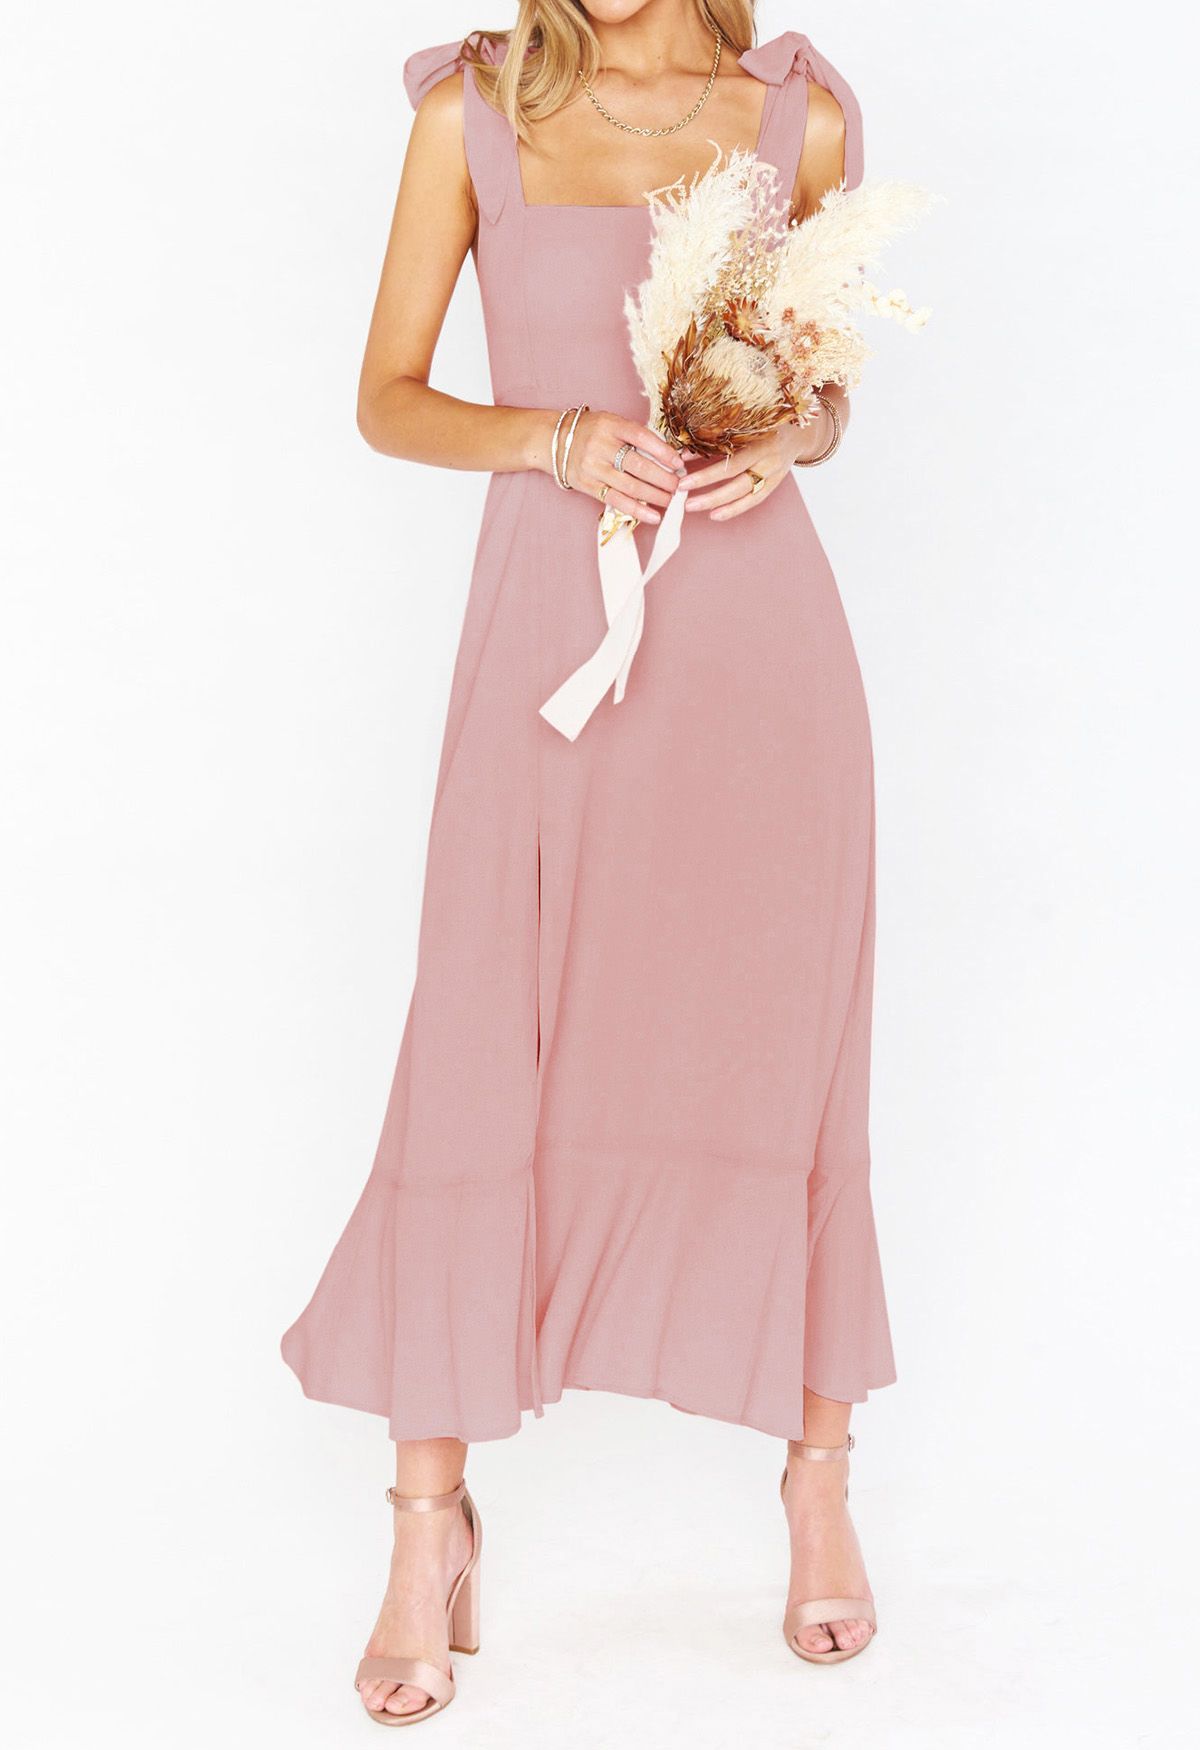 Cami-Kleid mit Rüschensaum und Schulterbindung in Rosa